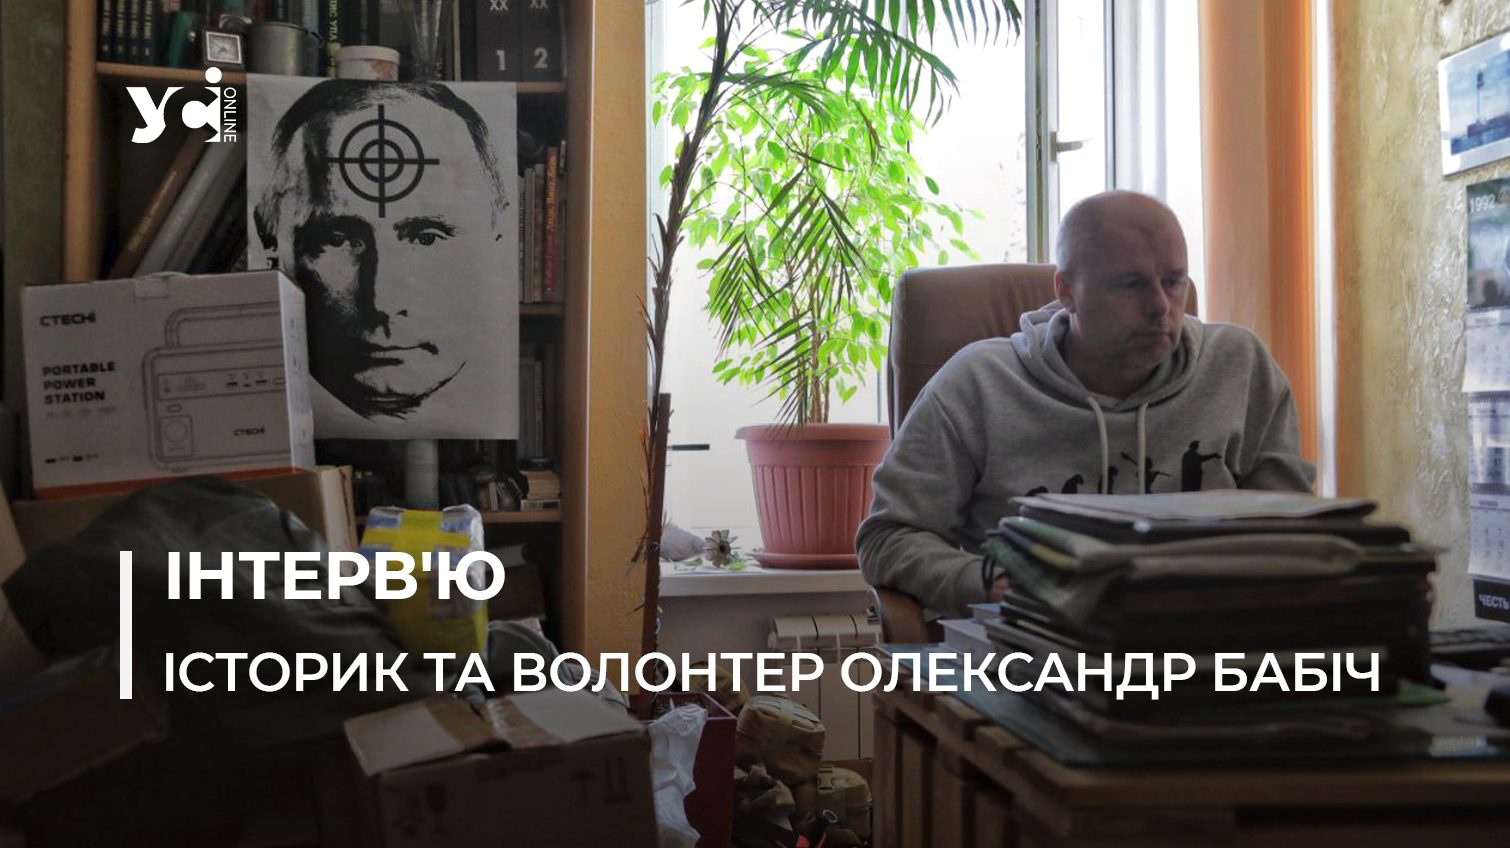 Одеський історик Олександр Бабіч про волонтерство, пам’ять і наслідки окупації «фото»